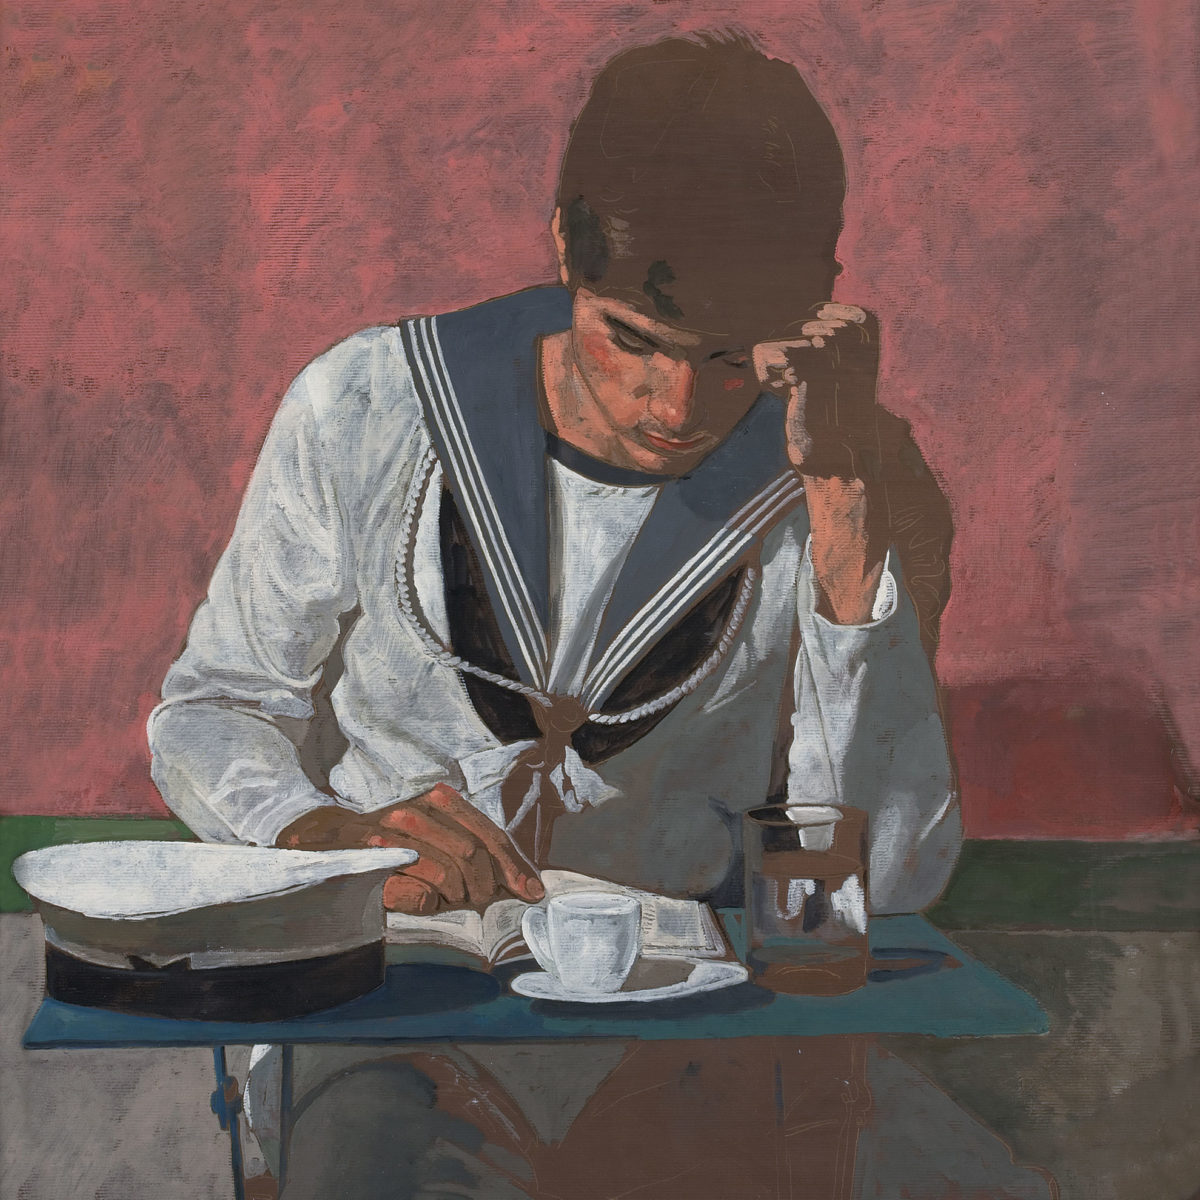 Γιάννης Τσαρούχης, «Ο Ναύτης που διαβάζει», 1981. Λάδι σε χαρτί kraft, 93x80 εκ. Ίδρυμα Γιάννη Τσαρούχη, αρ. ευρ. 1596.